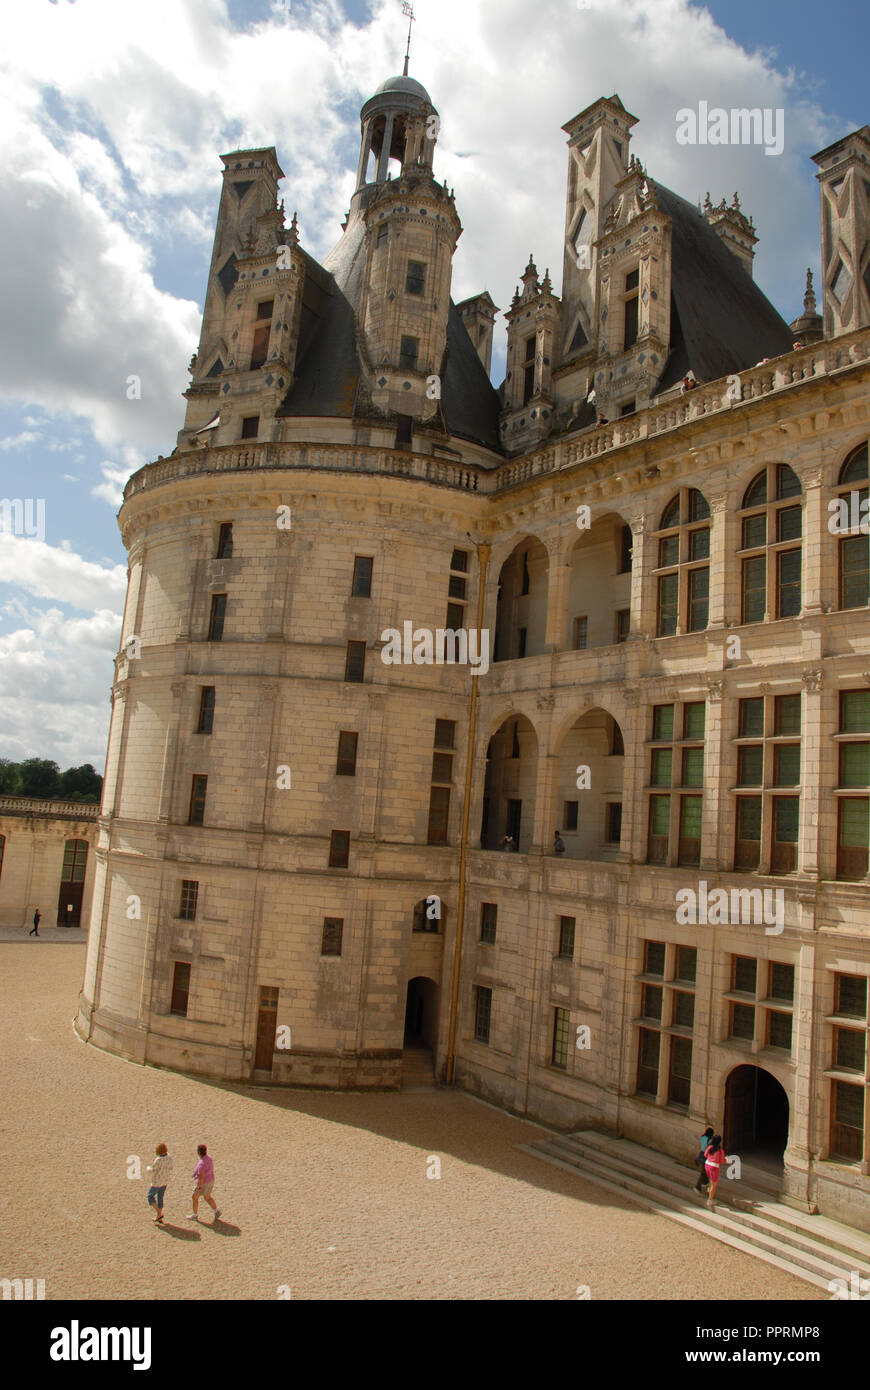 All'interno del cortile del Royal Chateau de Chambord nella Val de Loire (Valle della Loira in Francia. Il castello è uno dei più riconoscibili chat Foto Stock